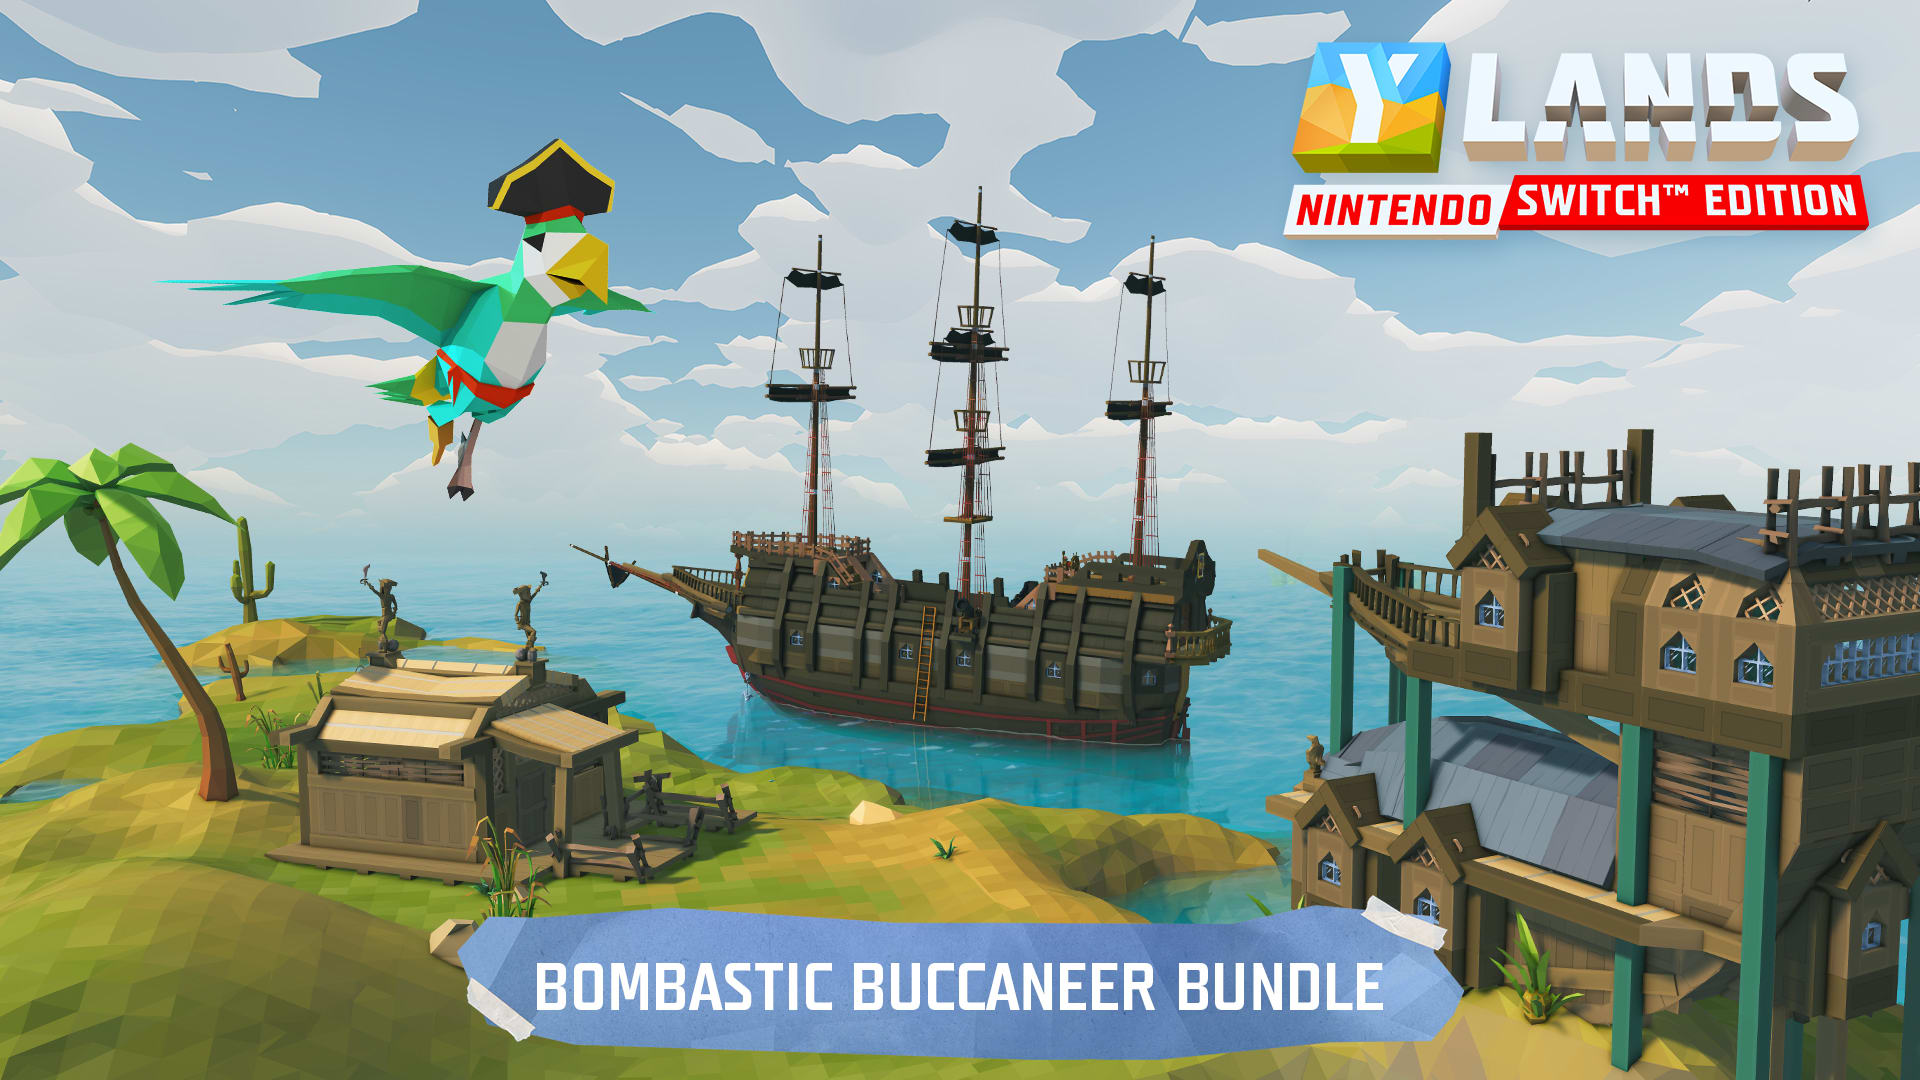 Ylands Nintendo Switch™ Edition - Bombastic Buccaneer Bundle